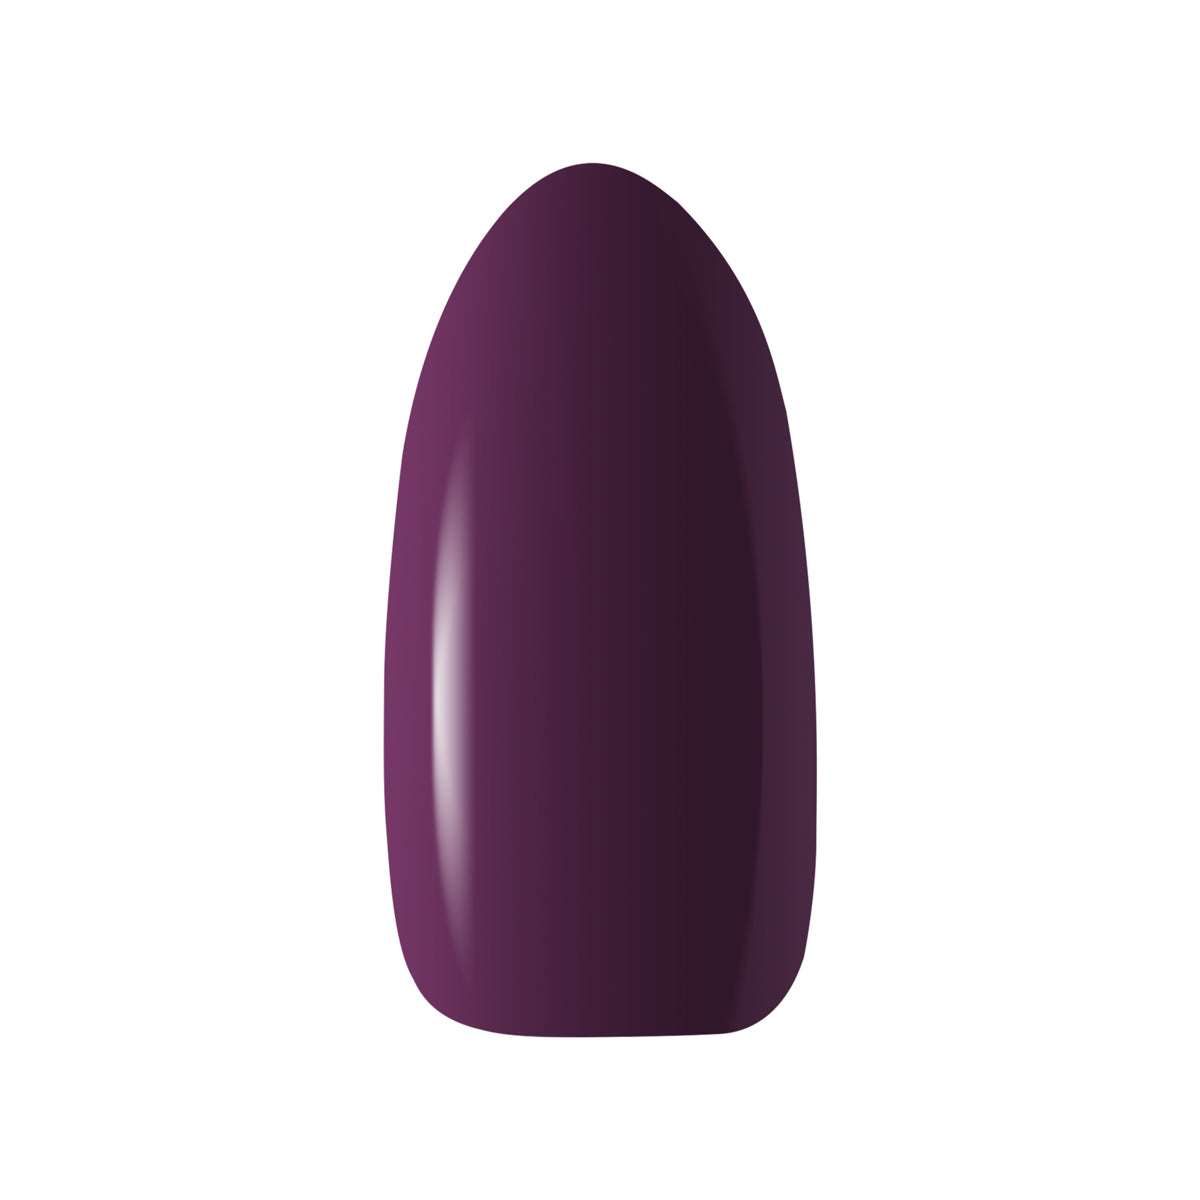 OCHO NAILS Hybride nagellak violet 411 -5 g